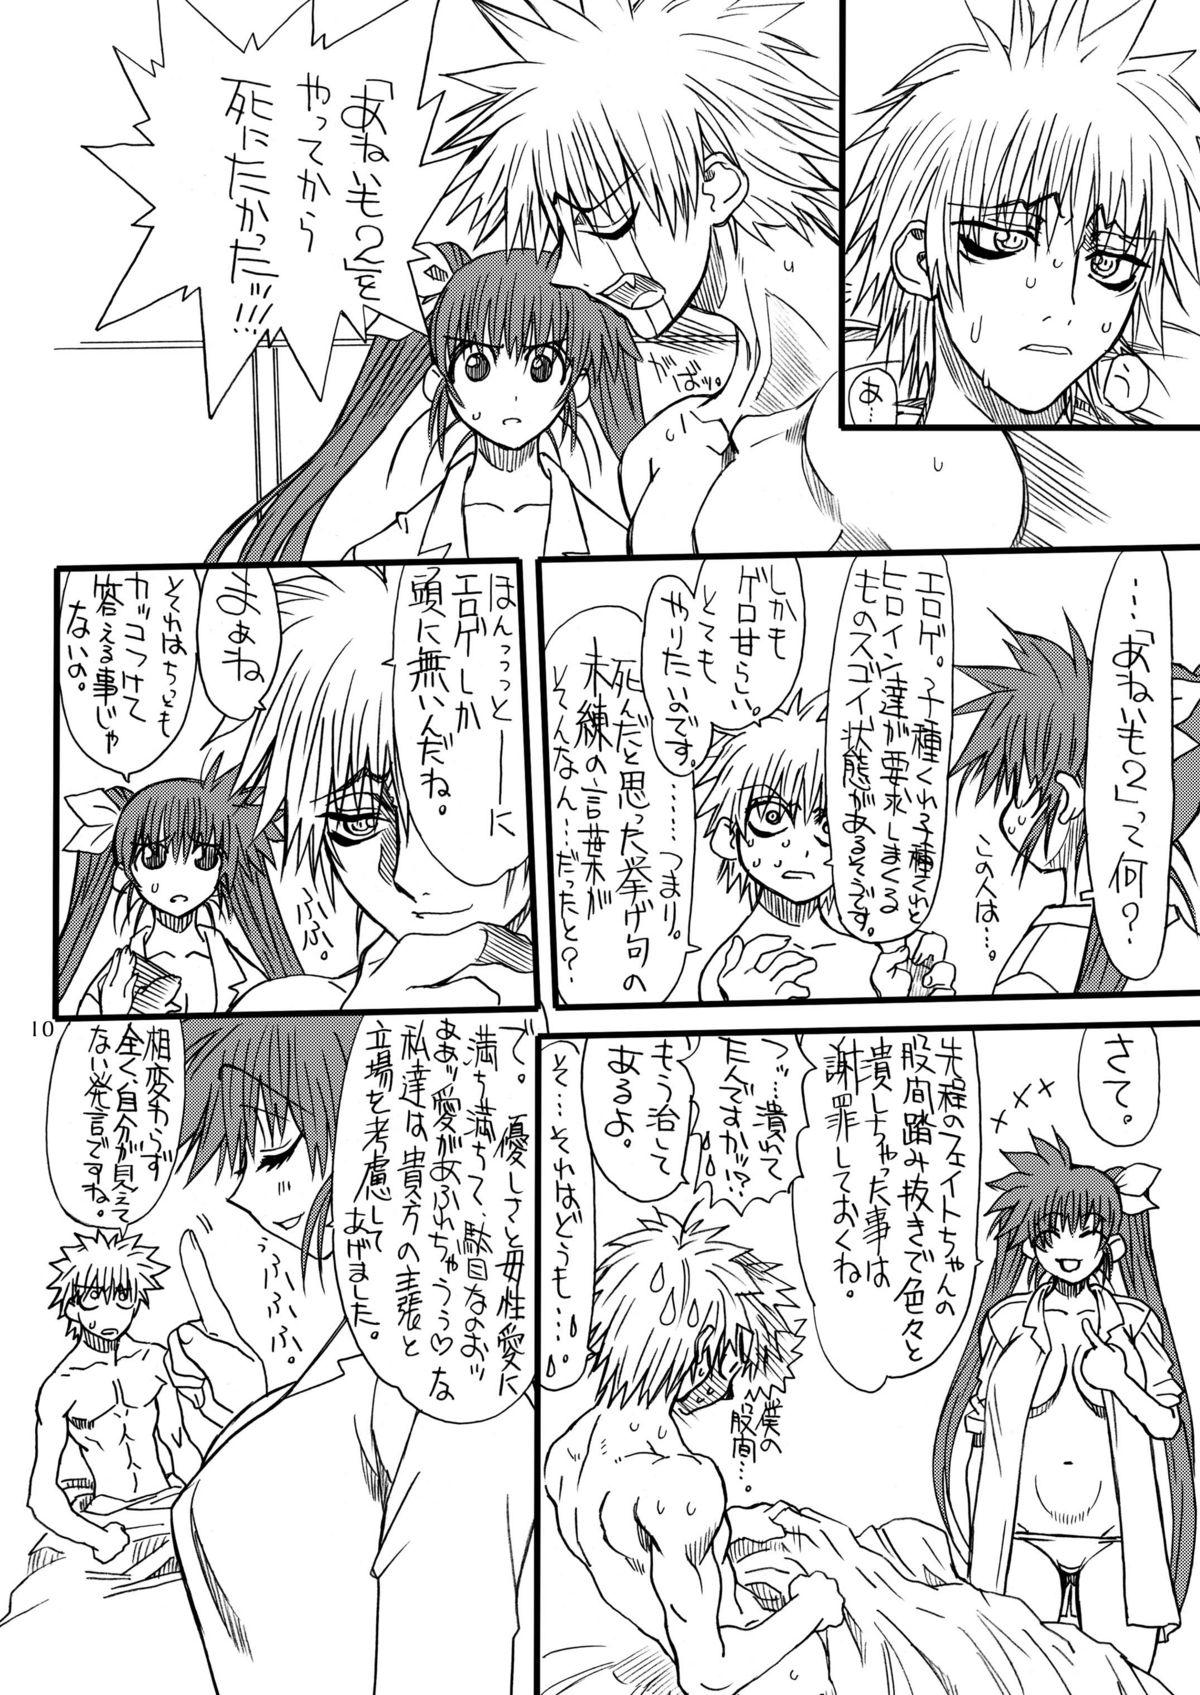 Cartoon Leaf Of Green 4 - Mahou shoujo lyrical nanoha Gostosas - Page 9